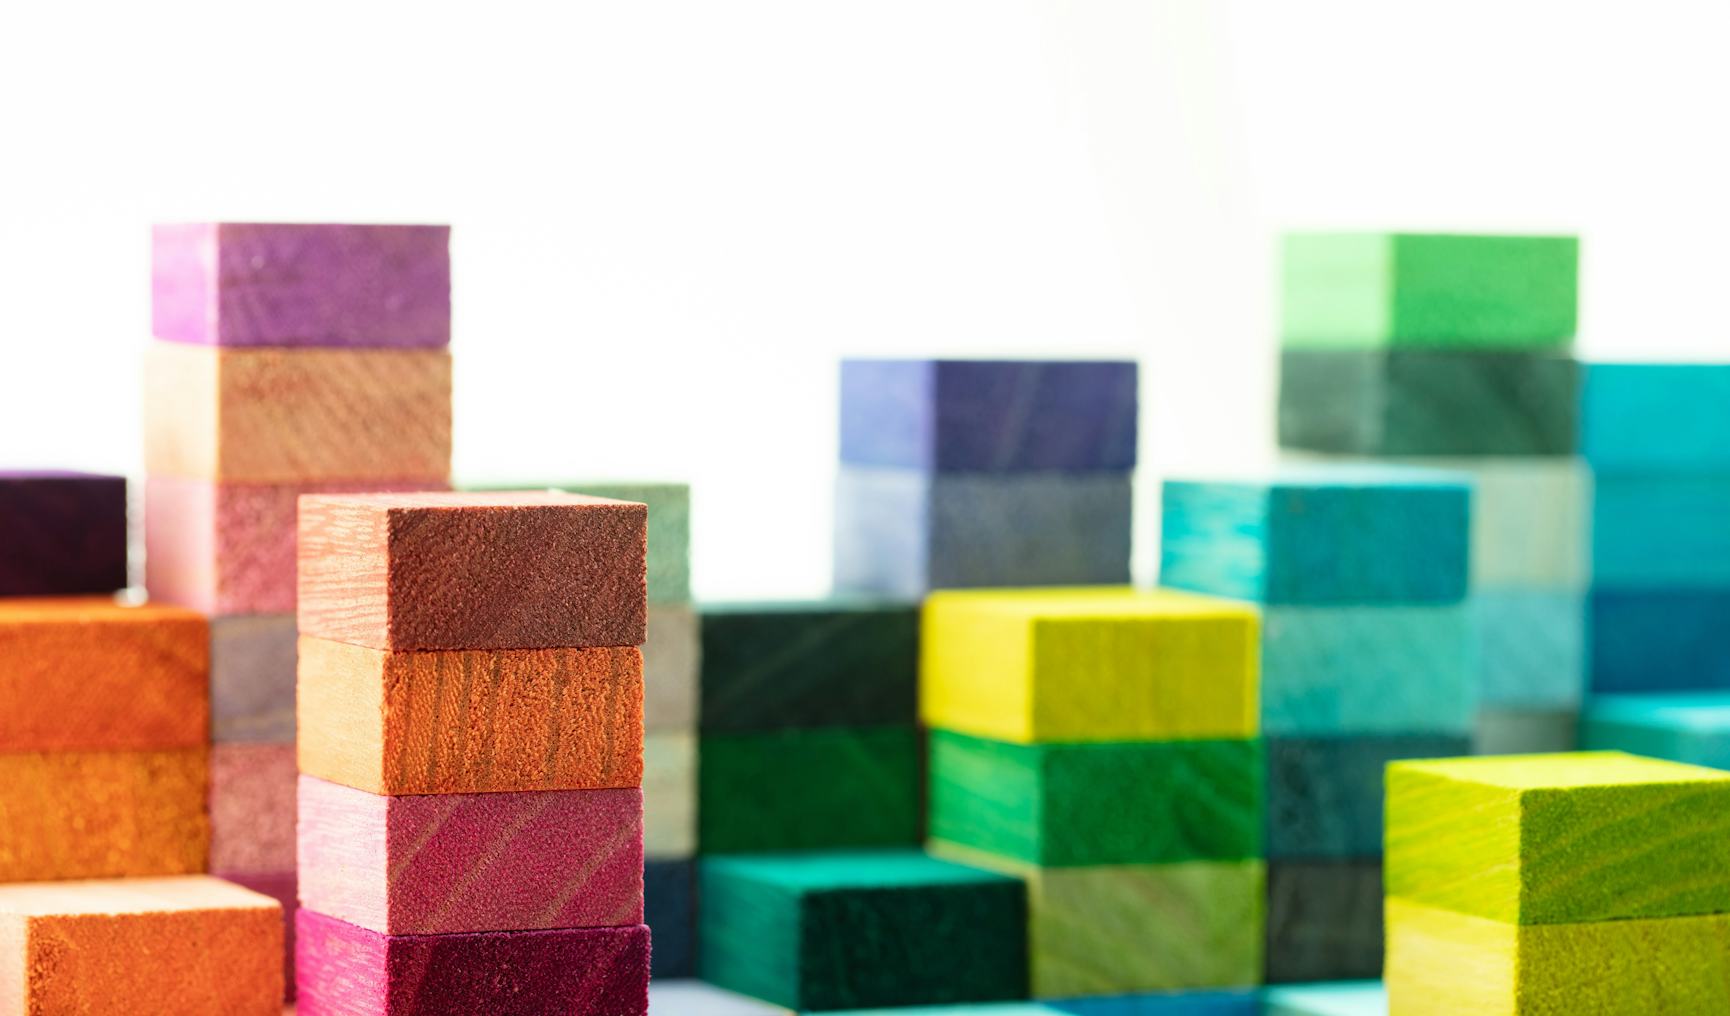 Colourful Lego blocks